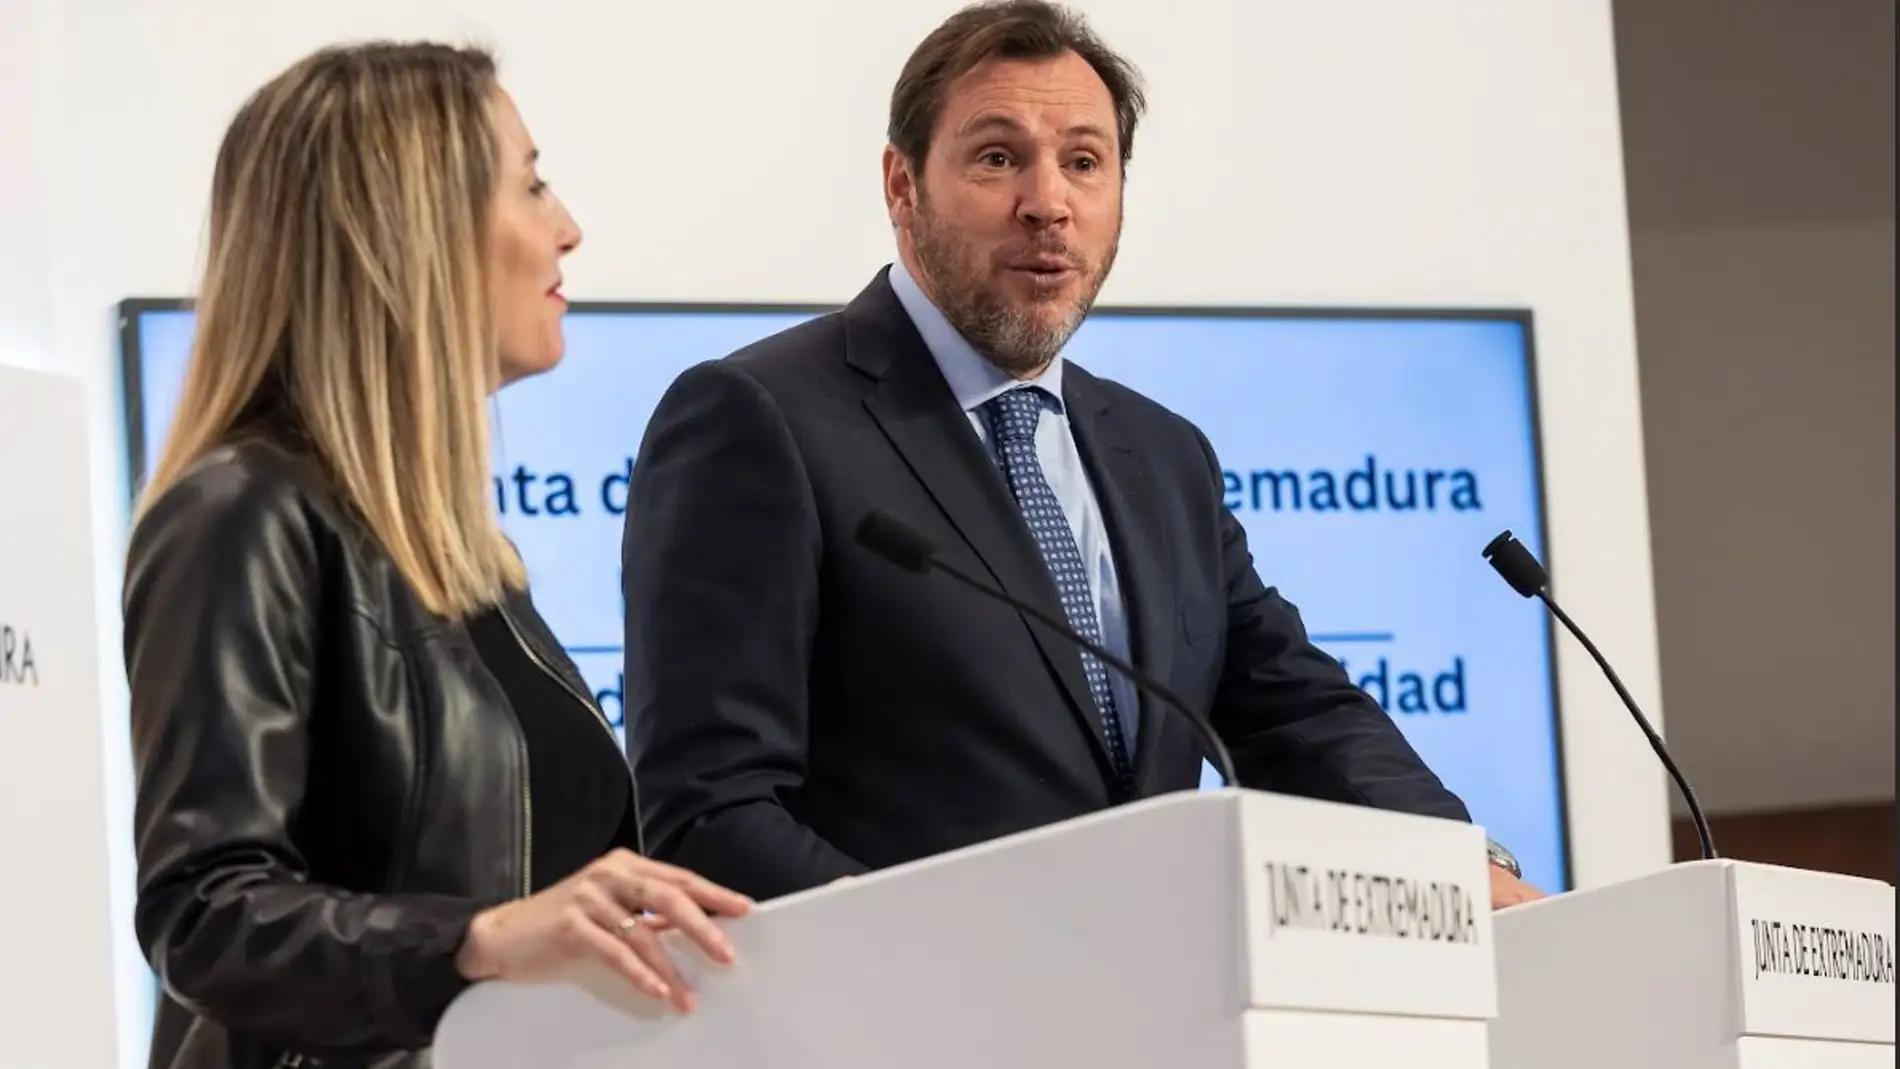 El Ministro Óscar Puente ratifica el compromiso inversor en Extremadura, con 600 millones de euros en obras ya en marcha este año